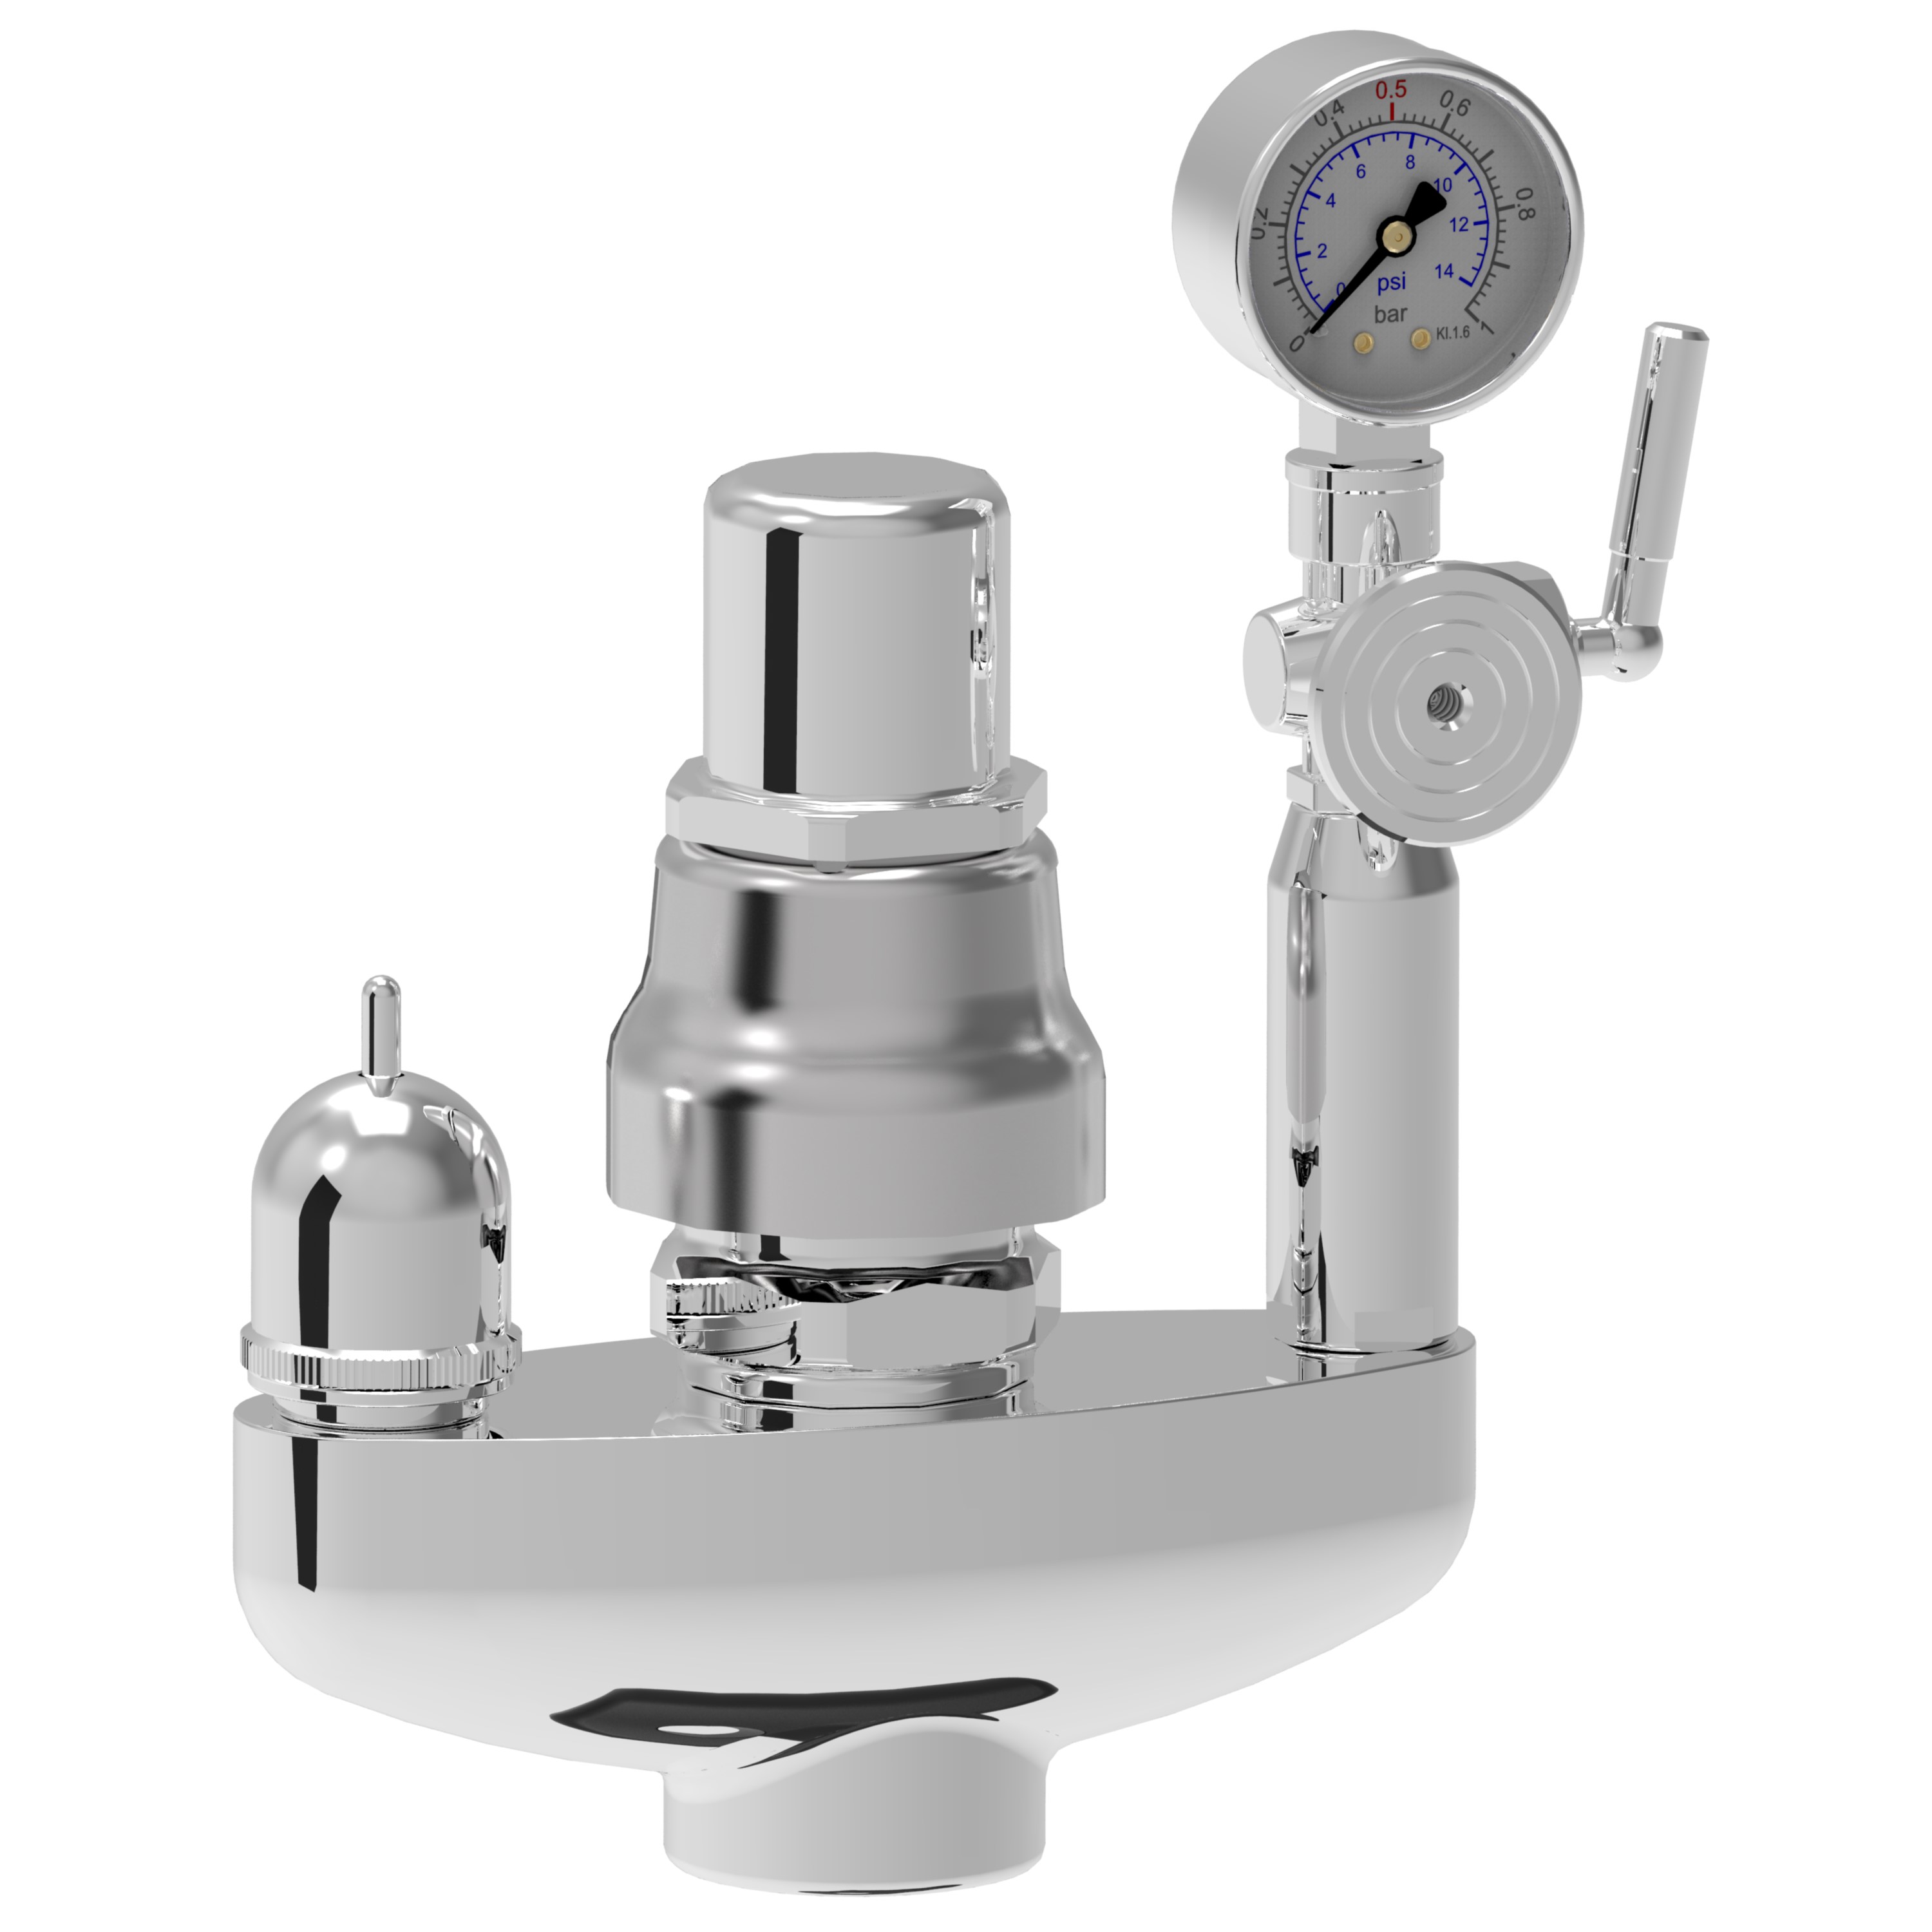 1”1/4 vertical complete steam safety valve